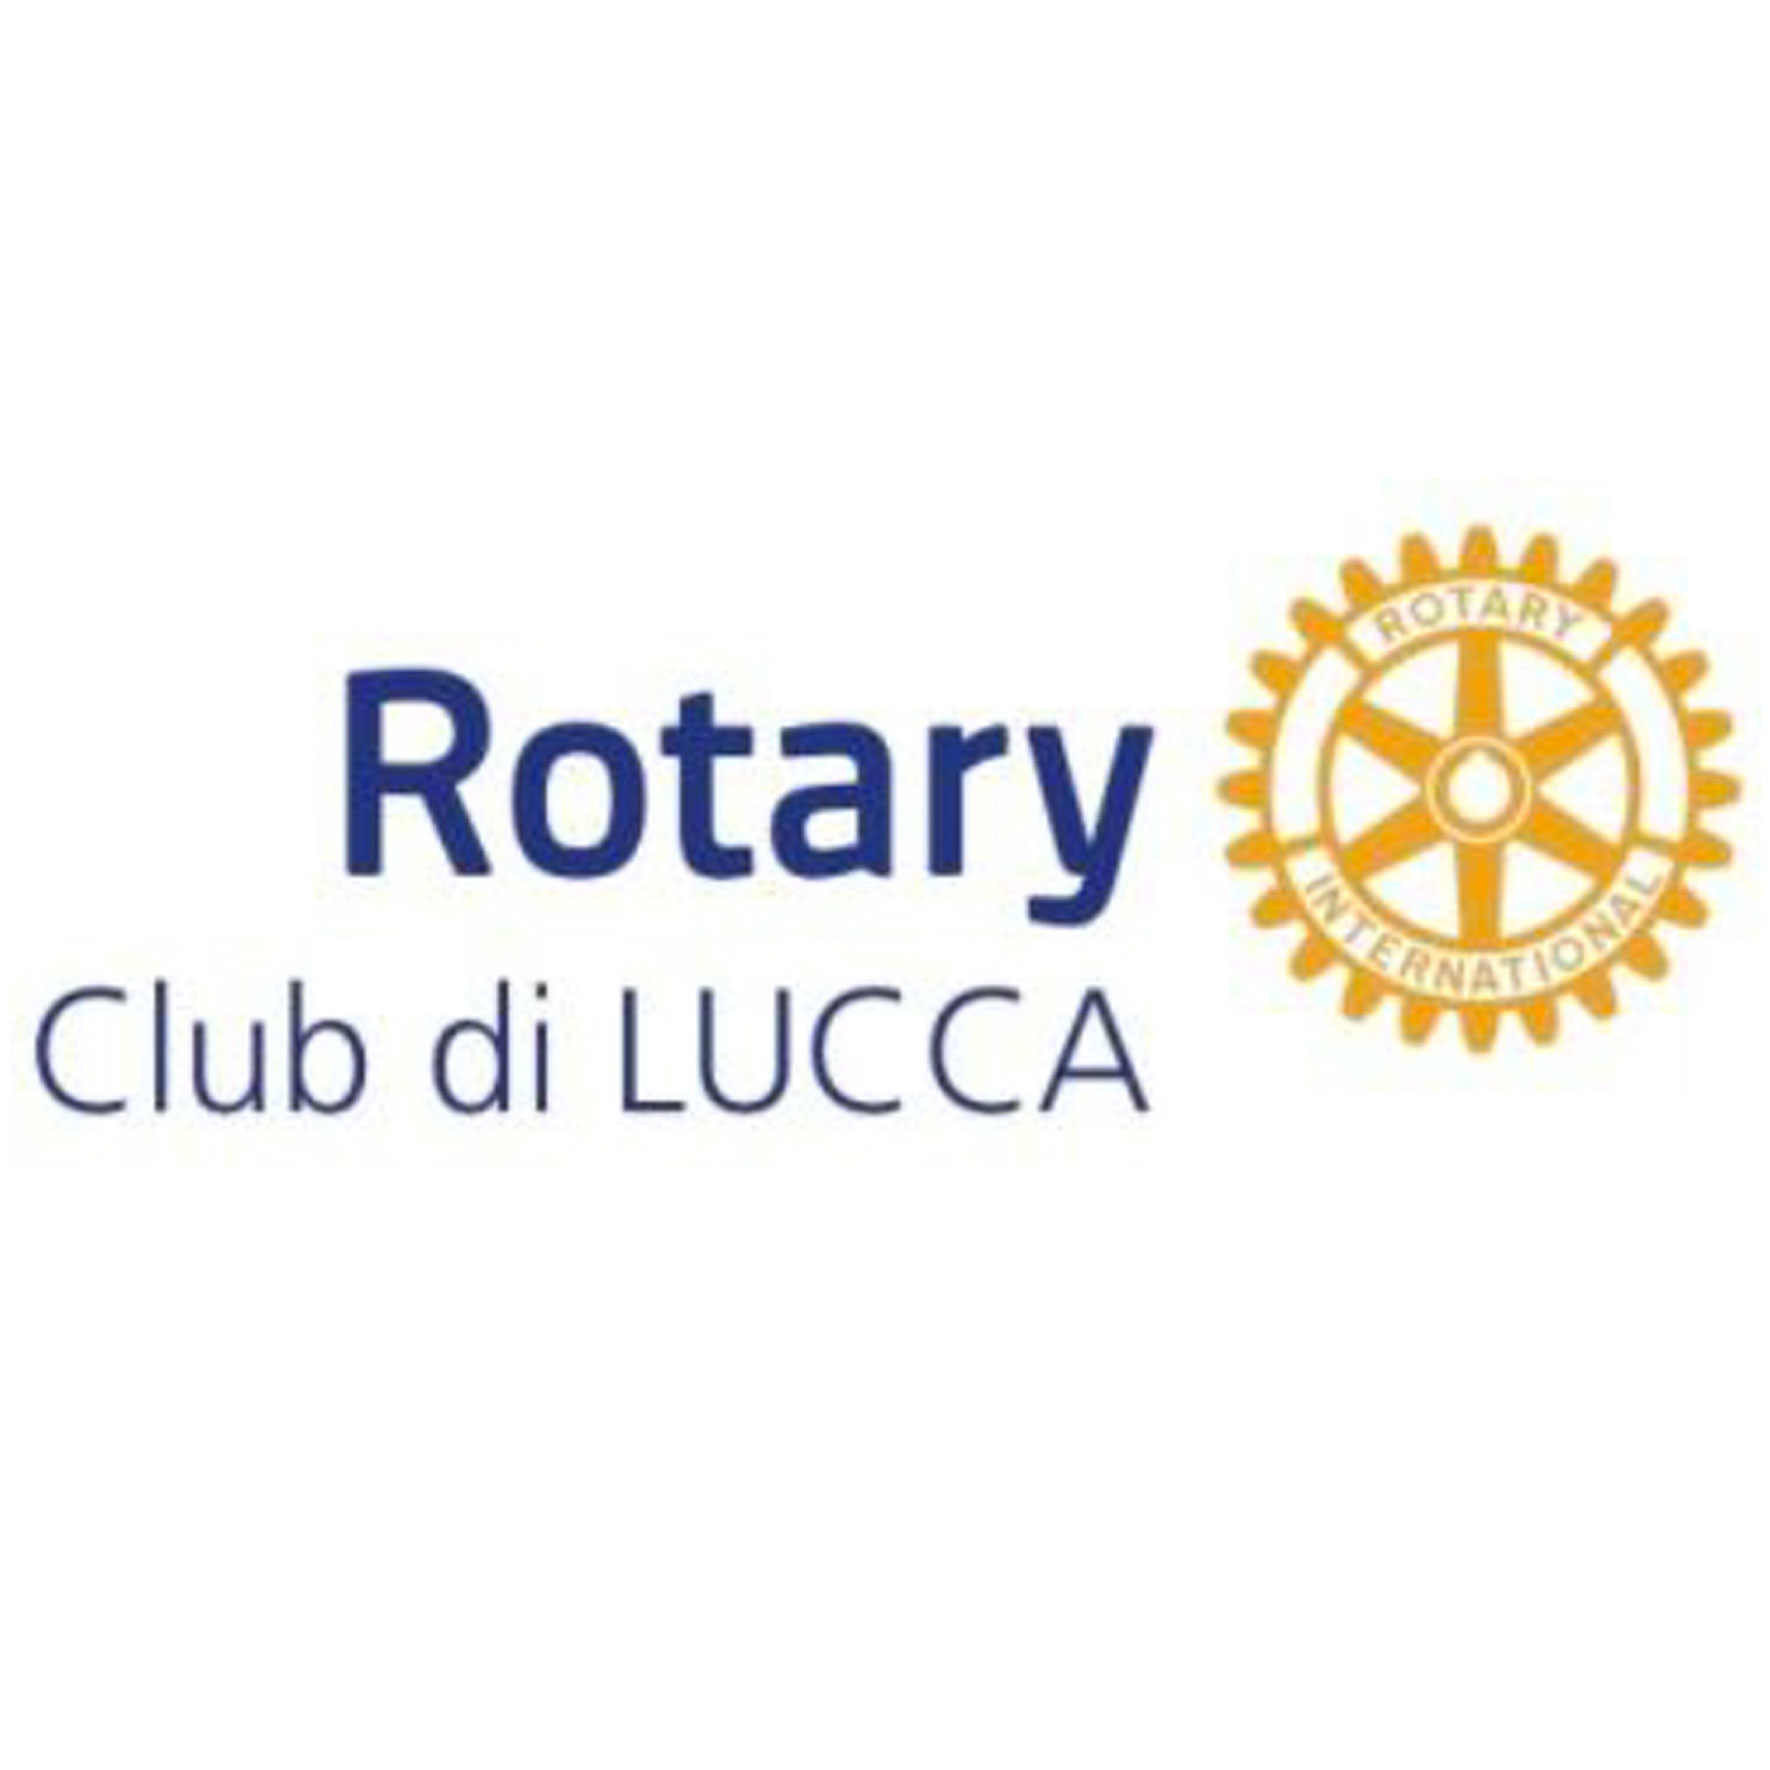 Rotary Club di Lucca